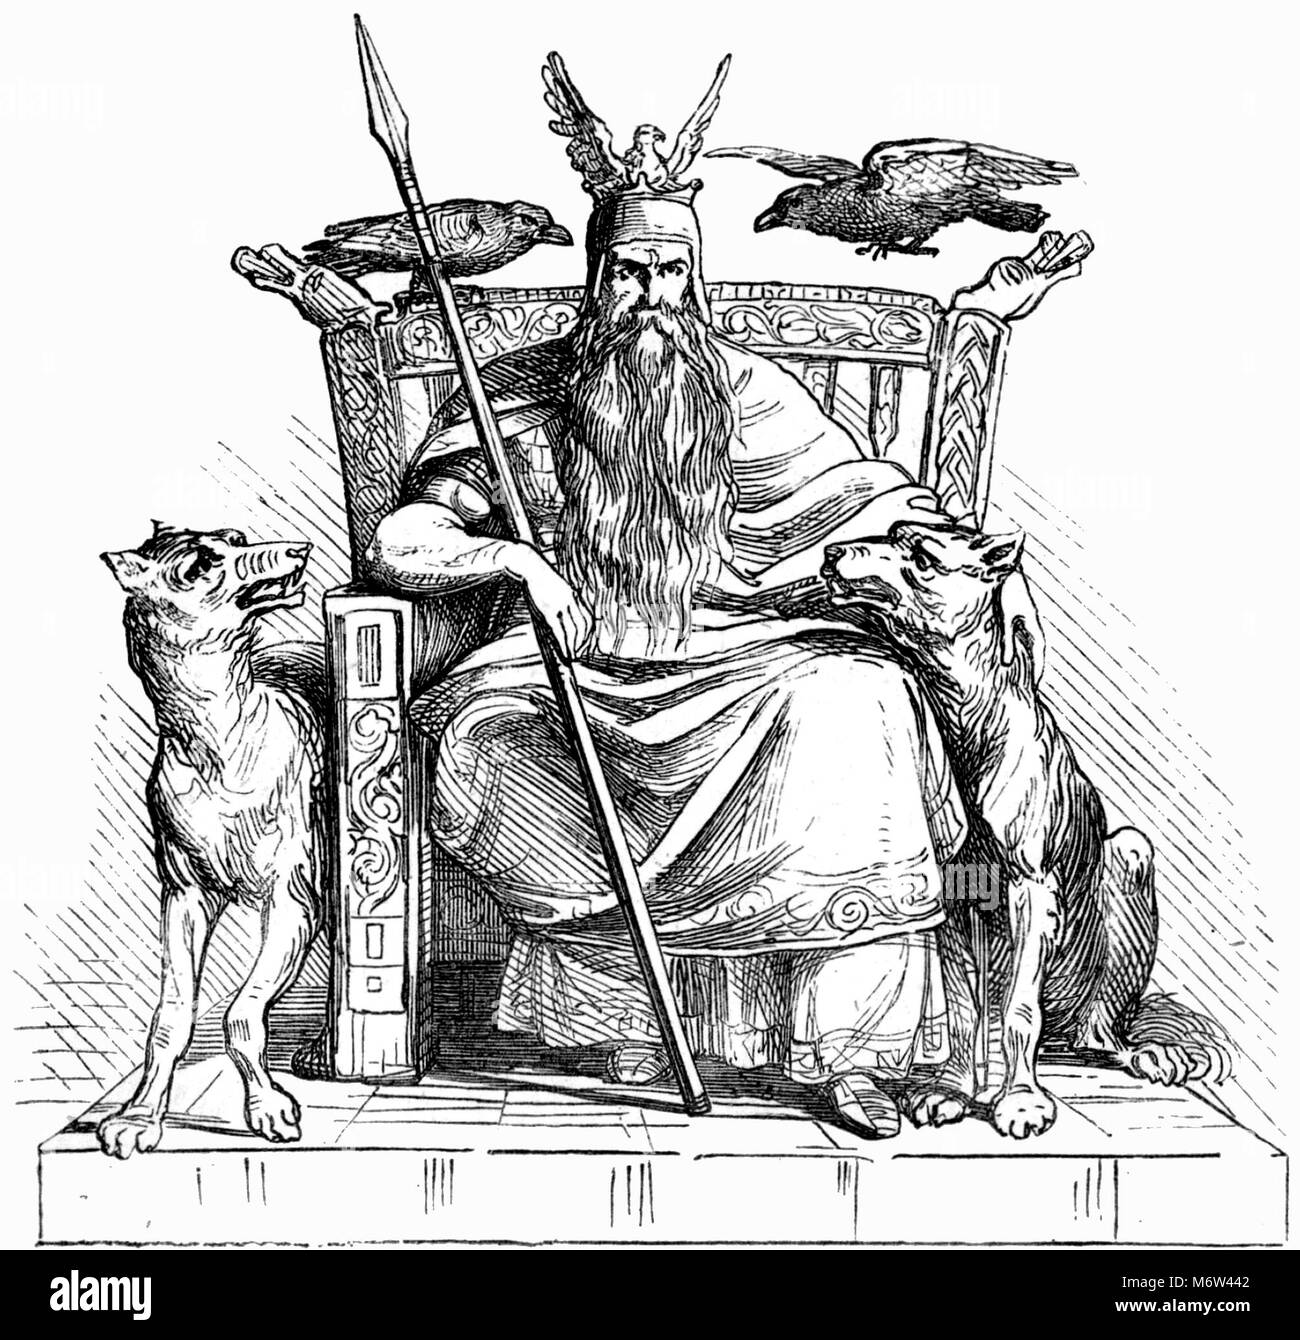 Der nordische Gott Odin mit seinen beiden Wölfen Geri und Freki und seinen beiden Raben Huginn und Muninn, mit seinem Speer Gungnir. Illustration aus dem Handbuch der Mythologie, veröffentlicht 1874. Stockfoto